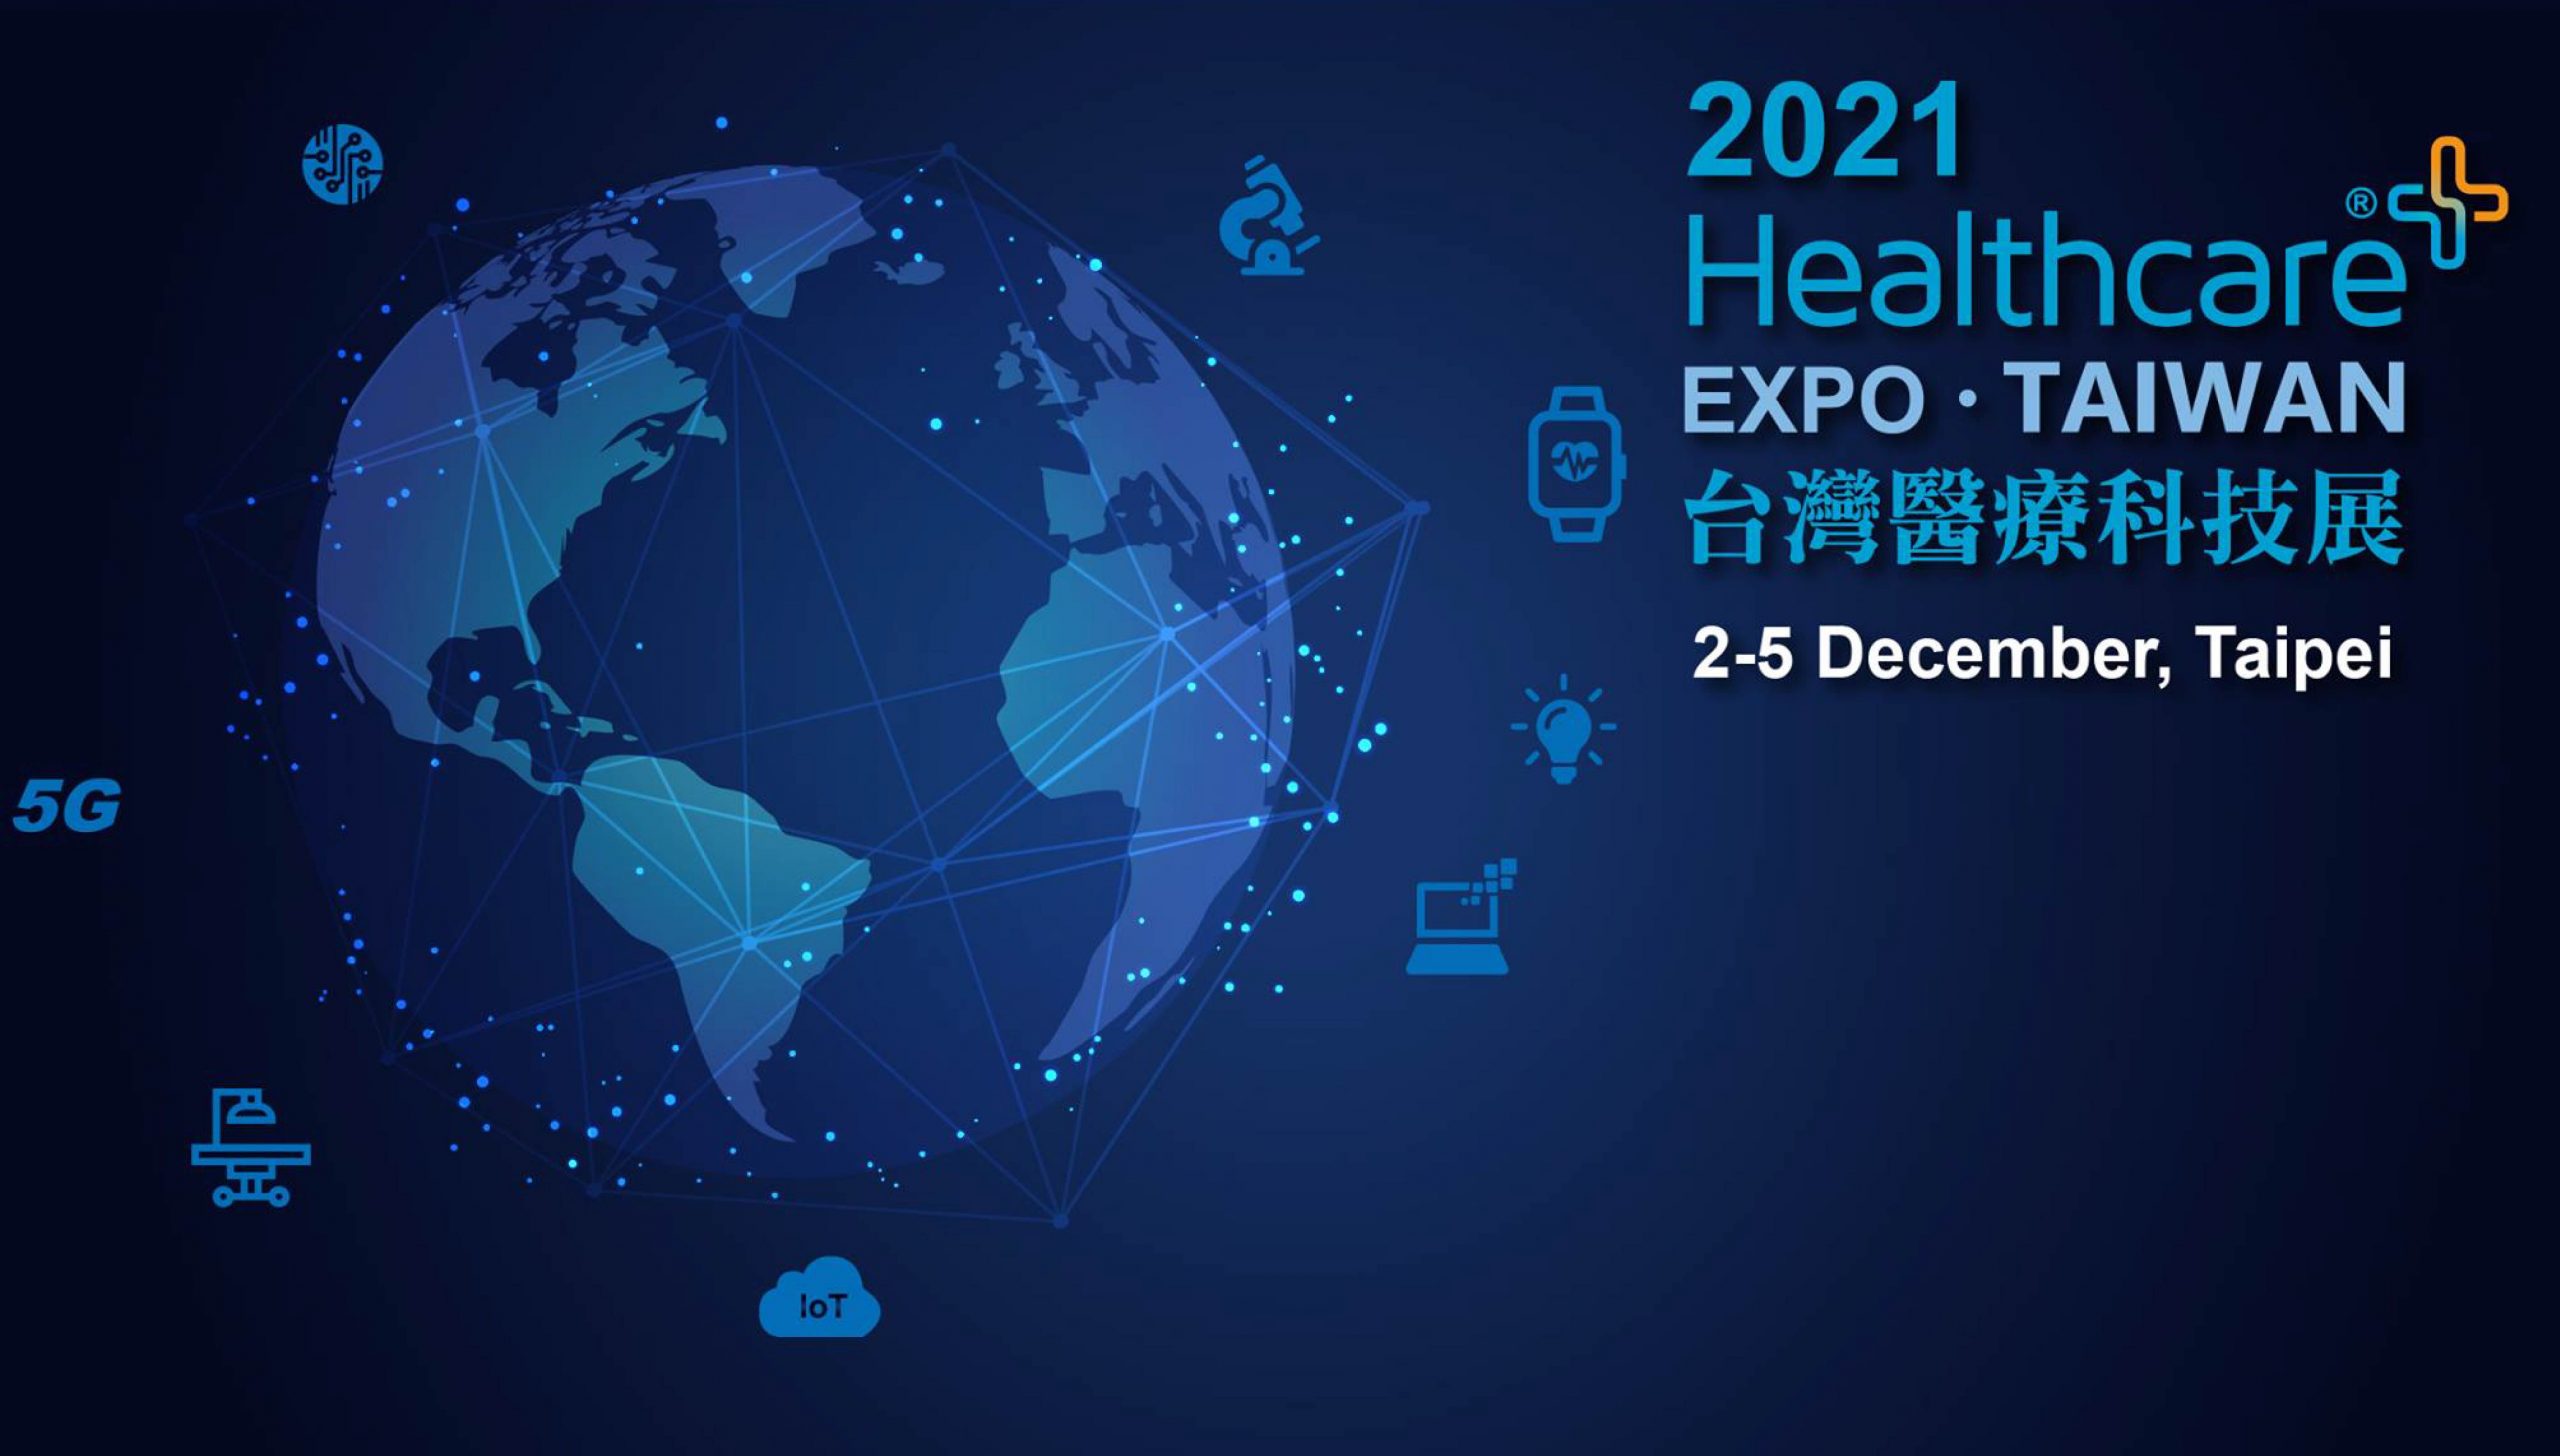 The Healthcare+ Expo Taiwan Scolioscan